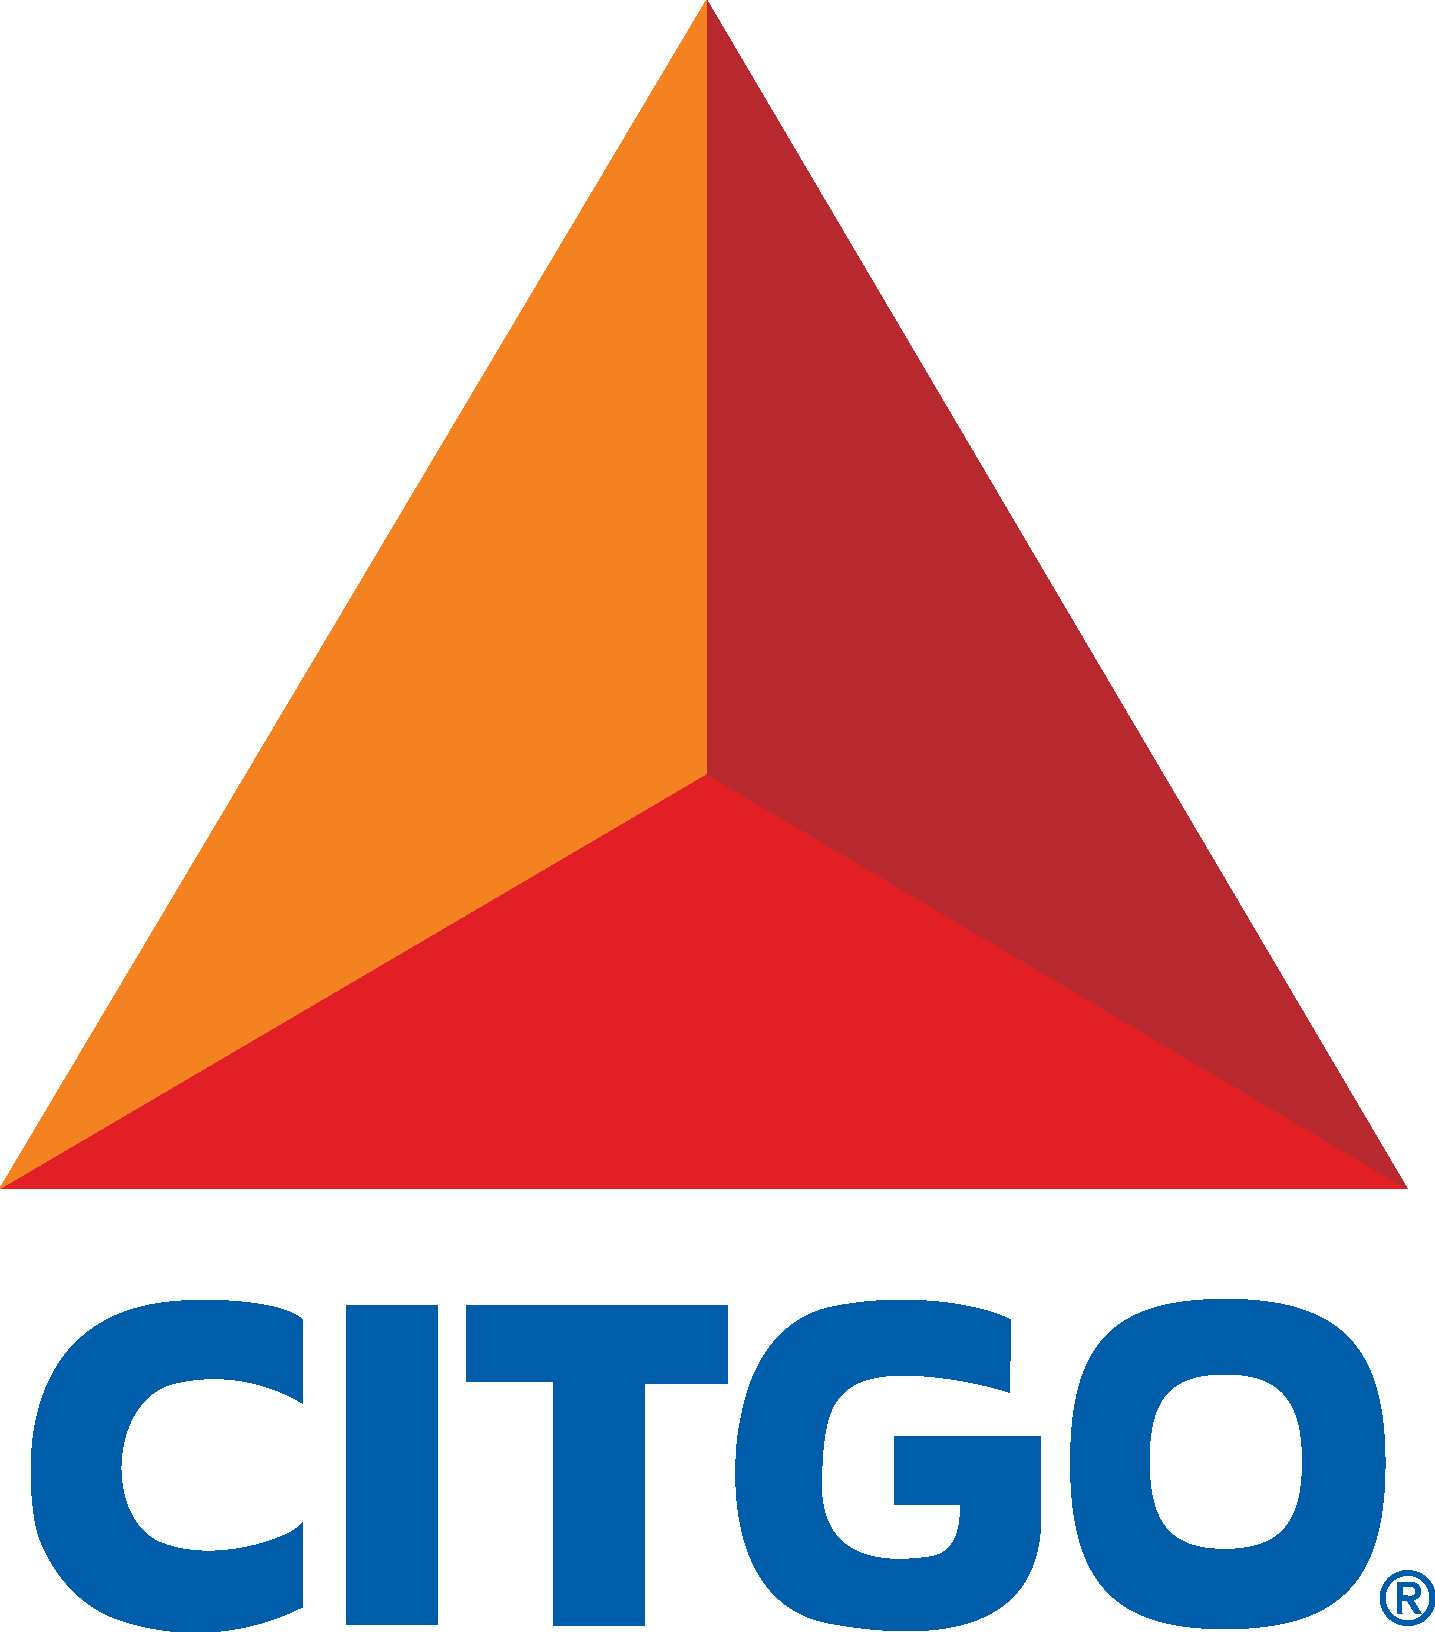 Citgo Logo png